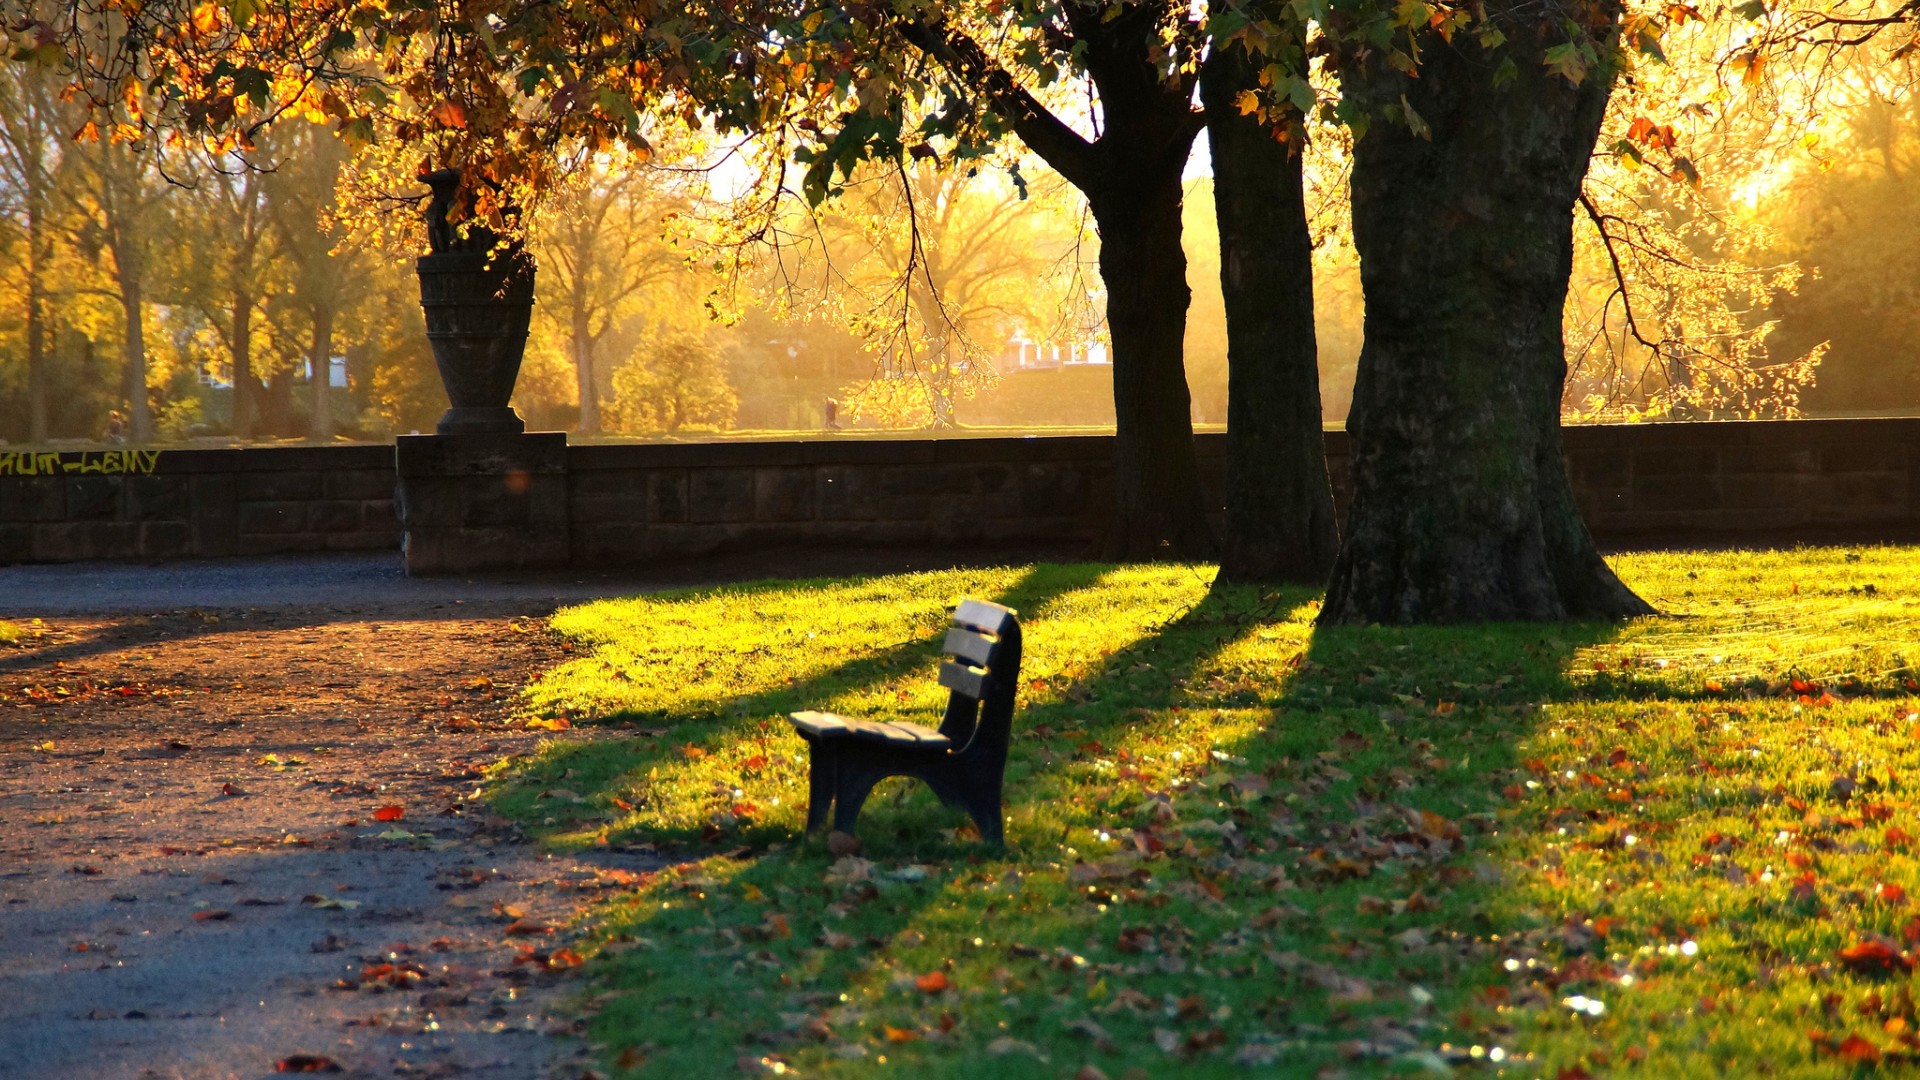 公园的长椅,草地,落叶,秋天,傍晚,安静,风景桌面壁纸